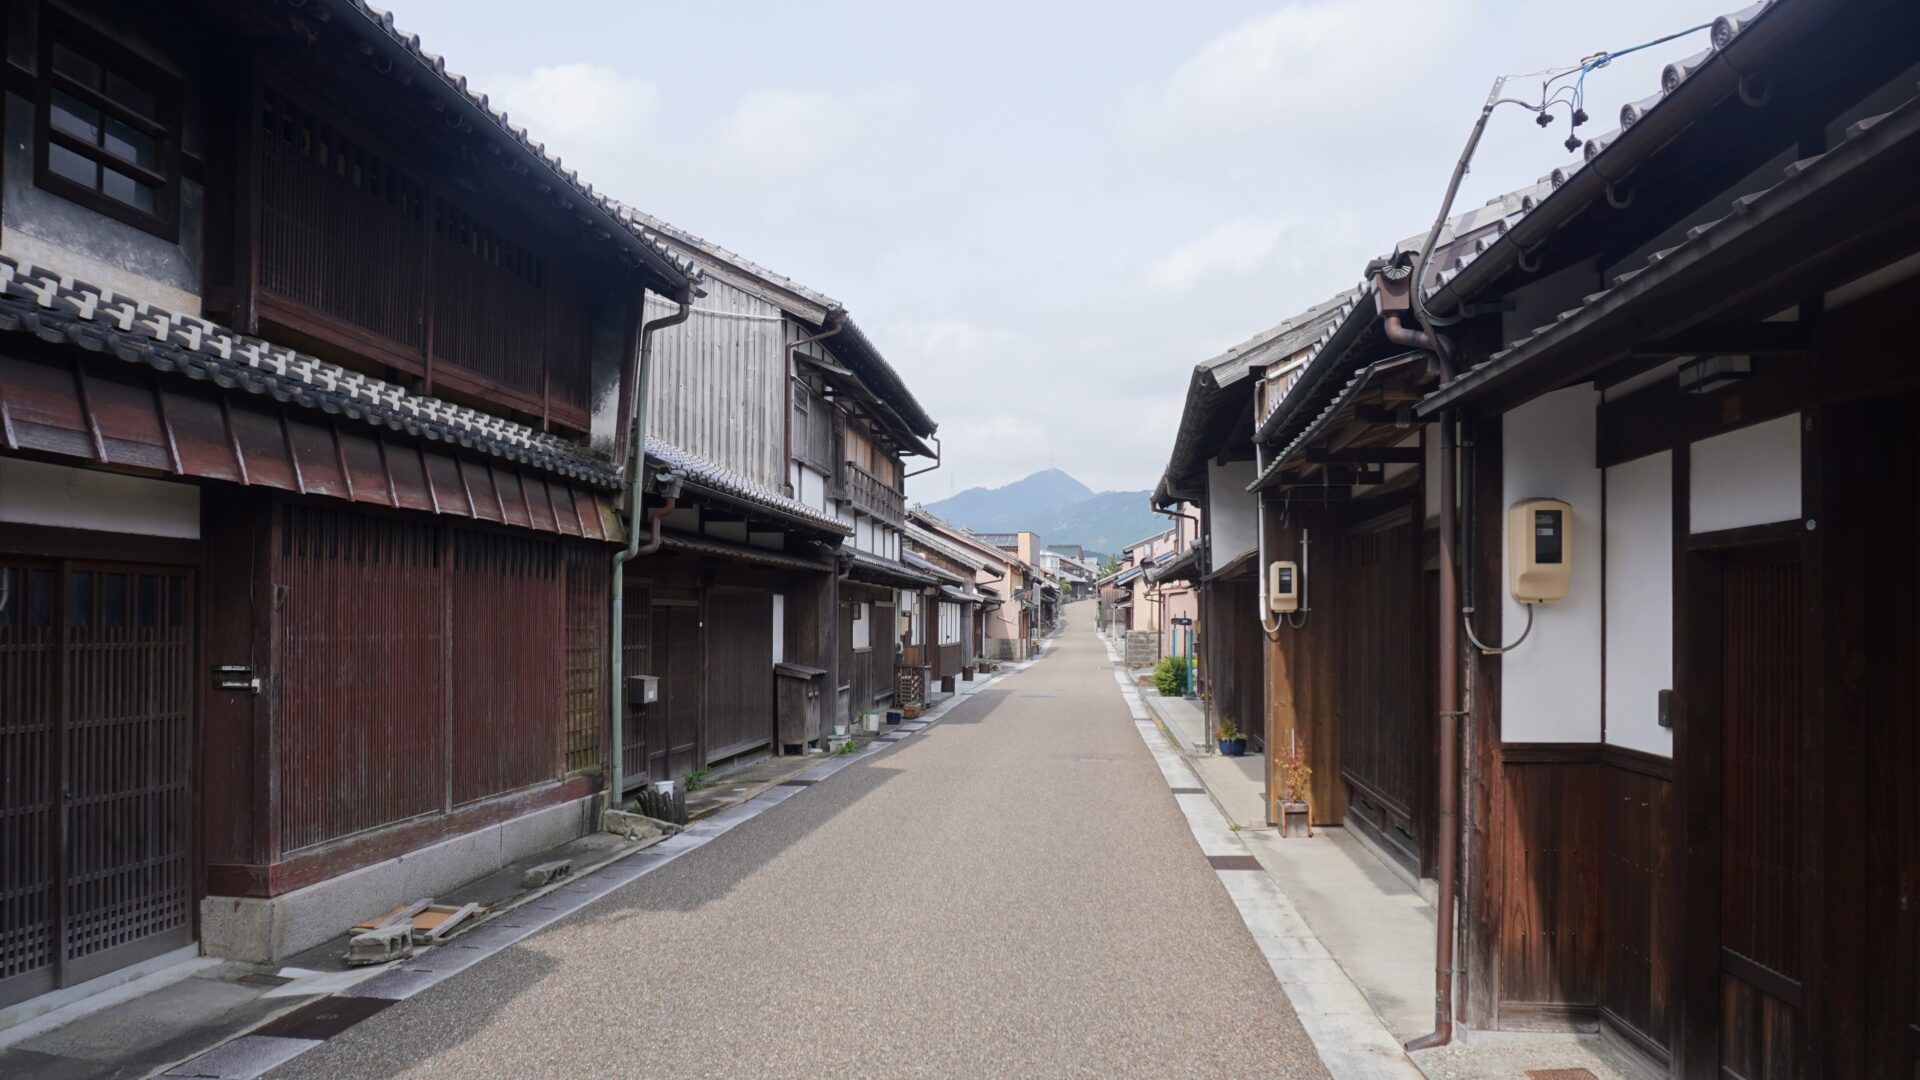 東海道でも指折りの昔ながらの景観が残る関宿のある亀山市をもっと学ぼう